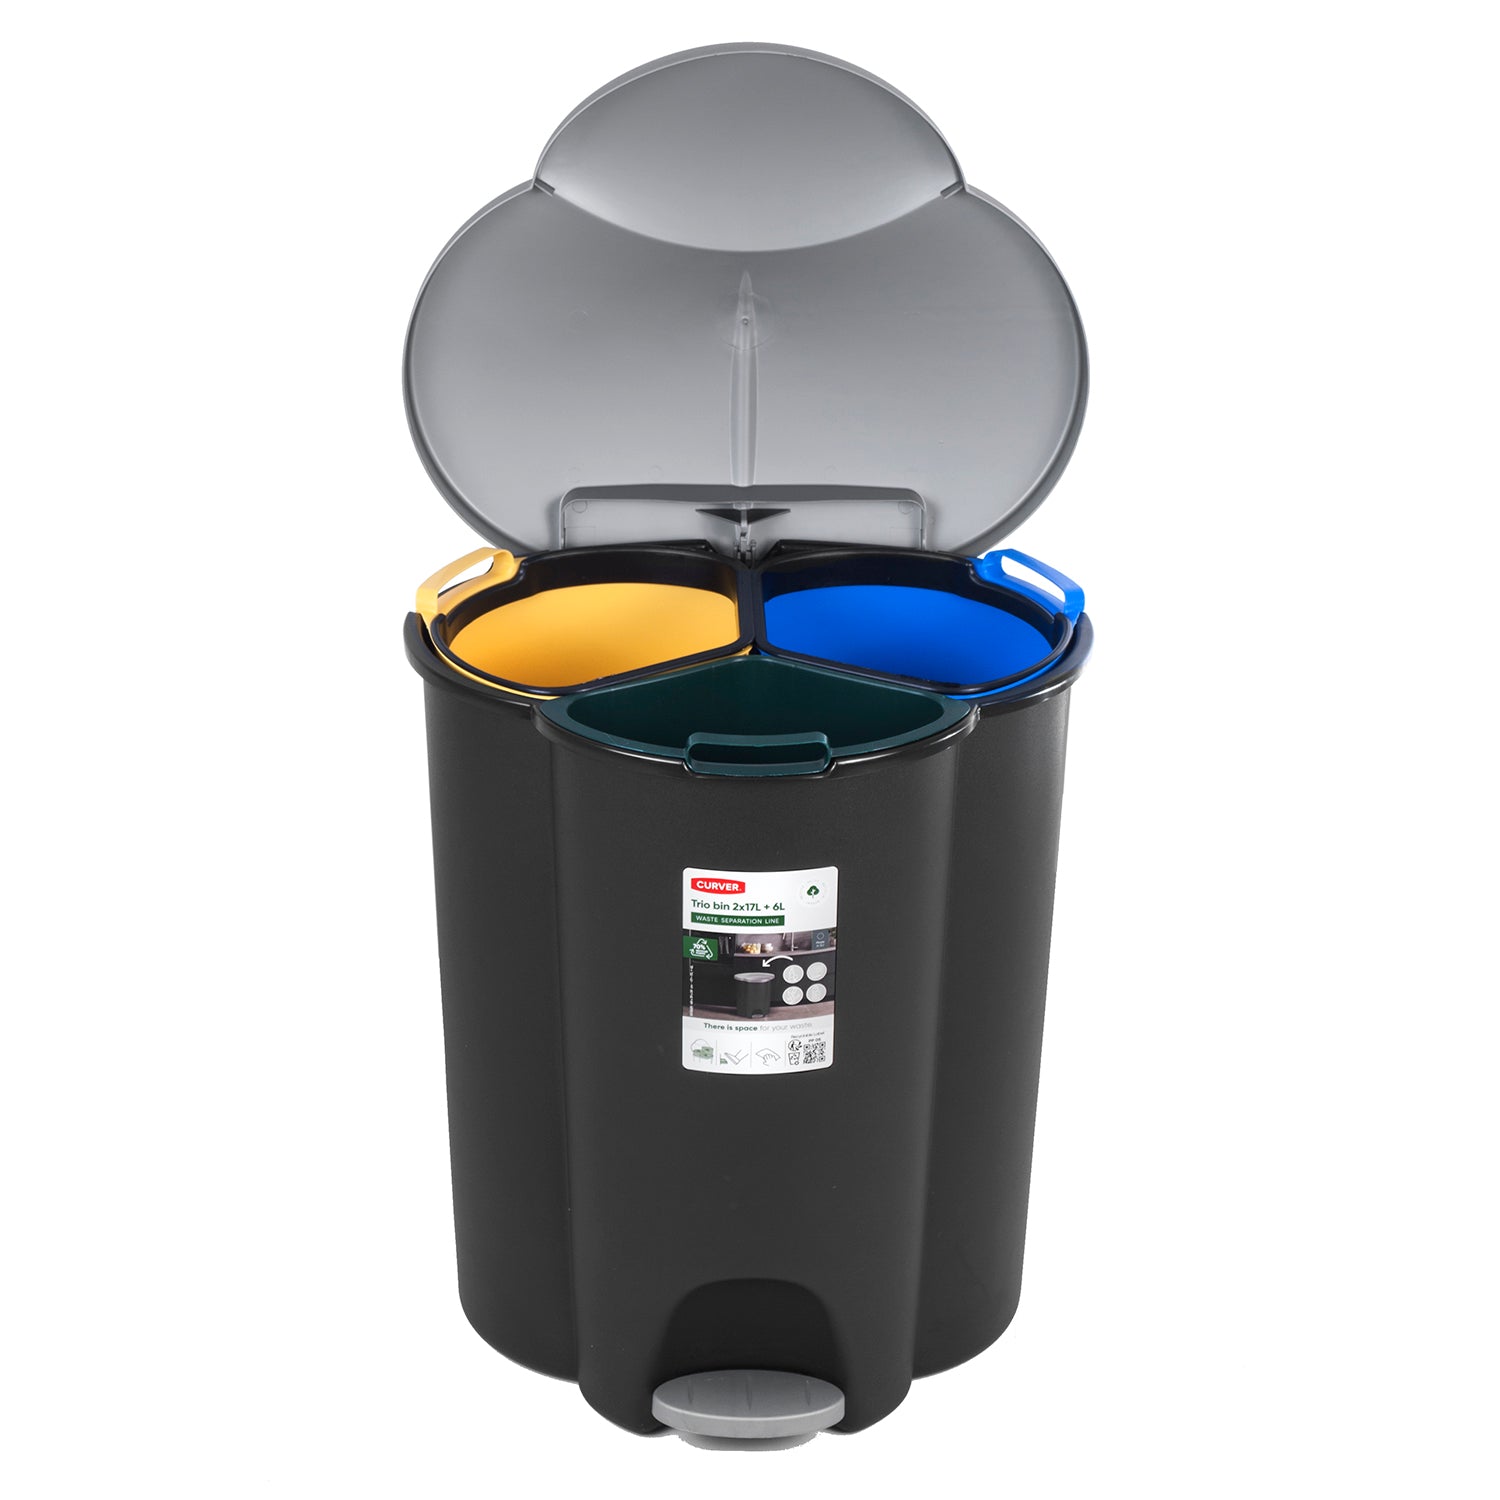  Curver Deco - Cubo de basura (40 L, 40 litros), color negro :  Hogar y Cocina